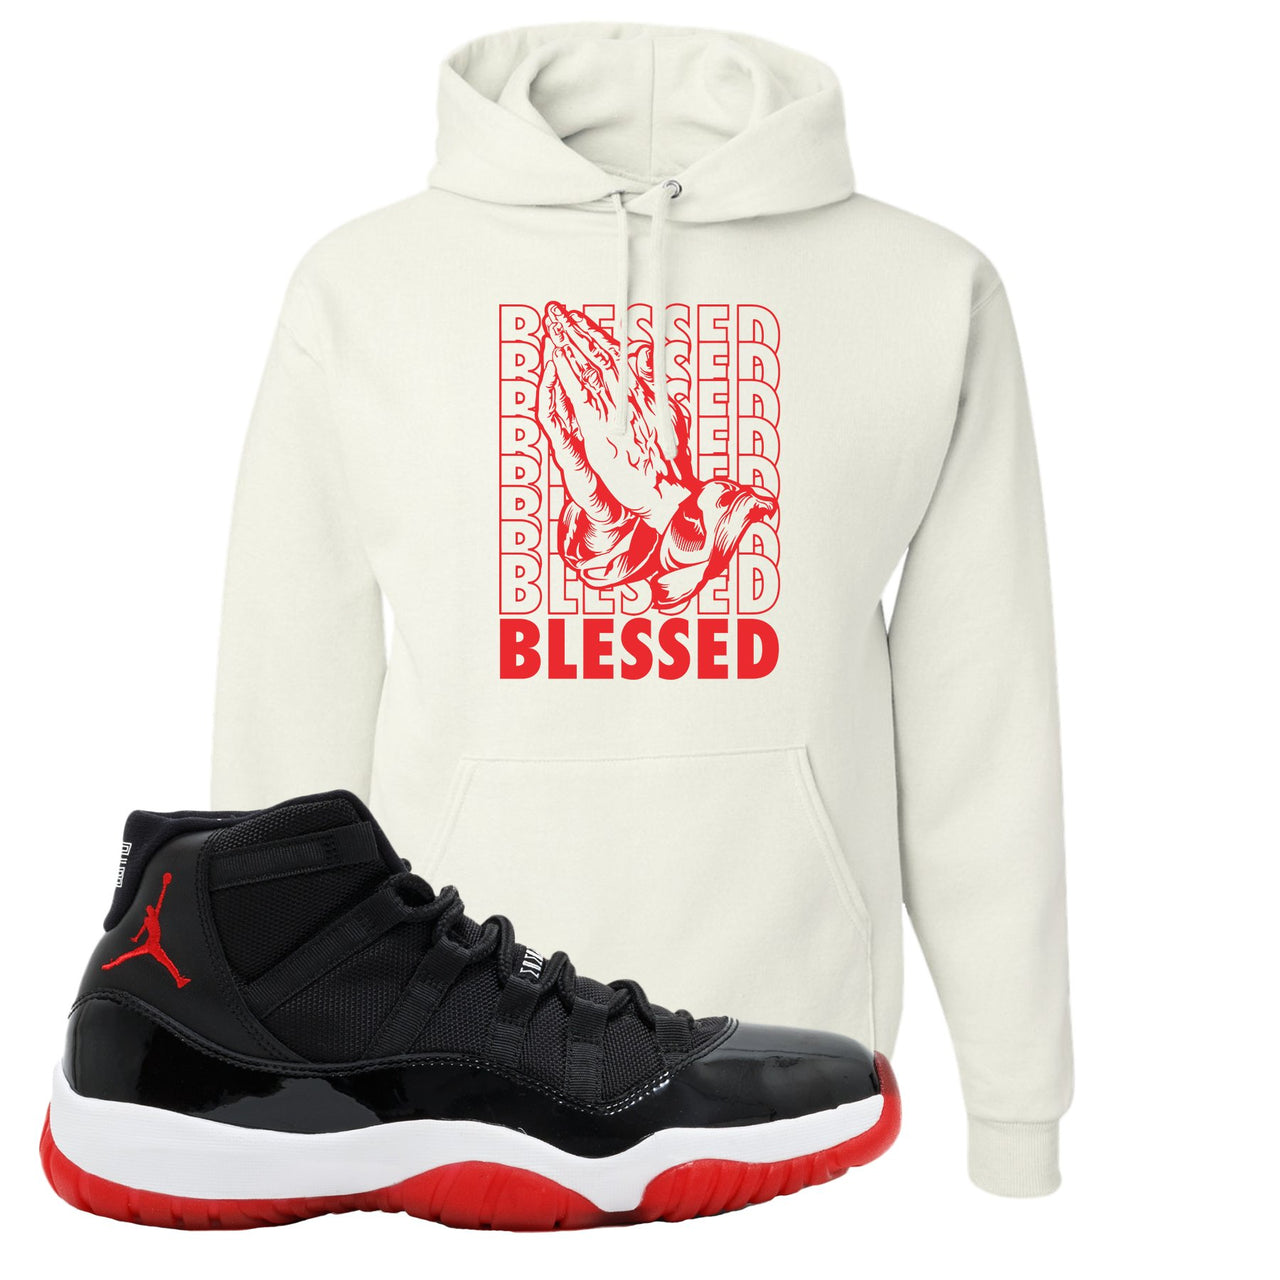 Jordan 11 Bred Blessed Black Sneaker Hook Up Pullover Hoodie